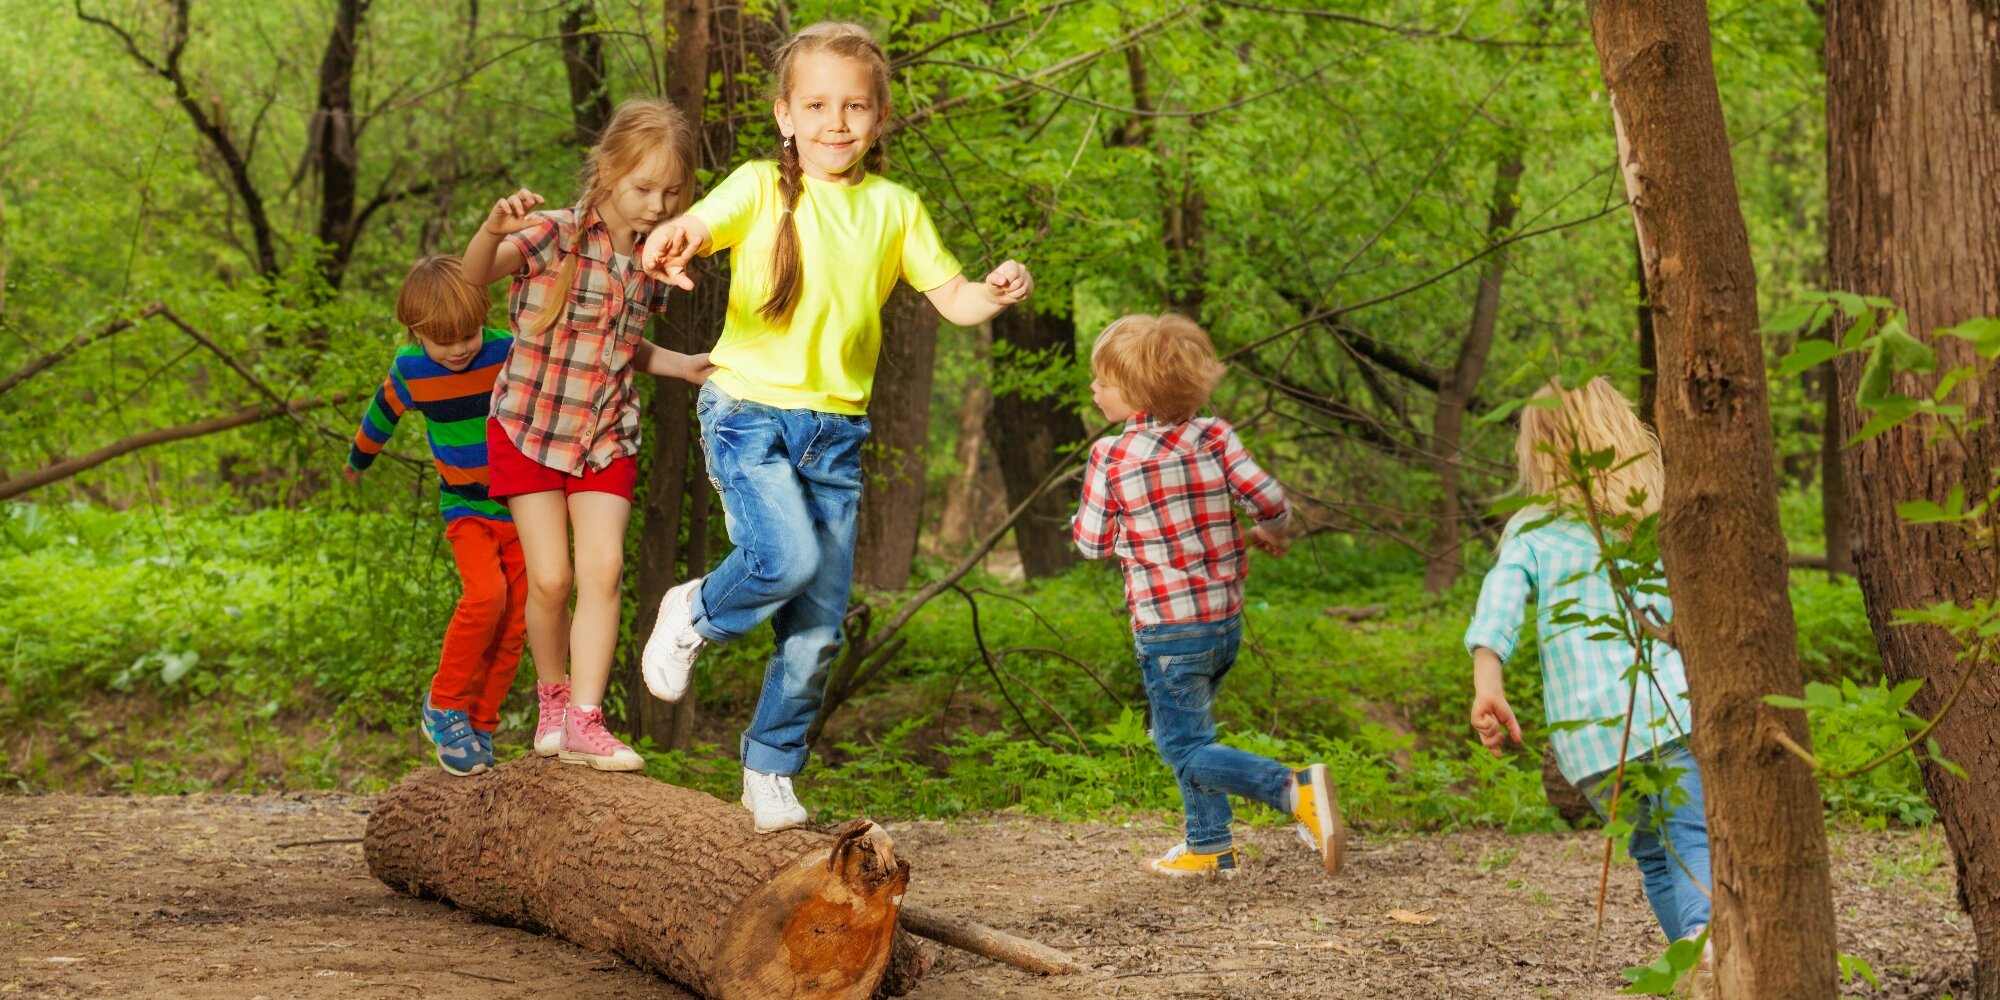 Прятки в парке аттракционов. Детская игрушка в лесу. Дети играют в ПРЯТКИ на природе. Игры для детей в лесу на природе. ПРЯТКИ В лесу.